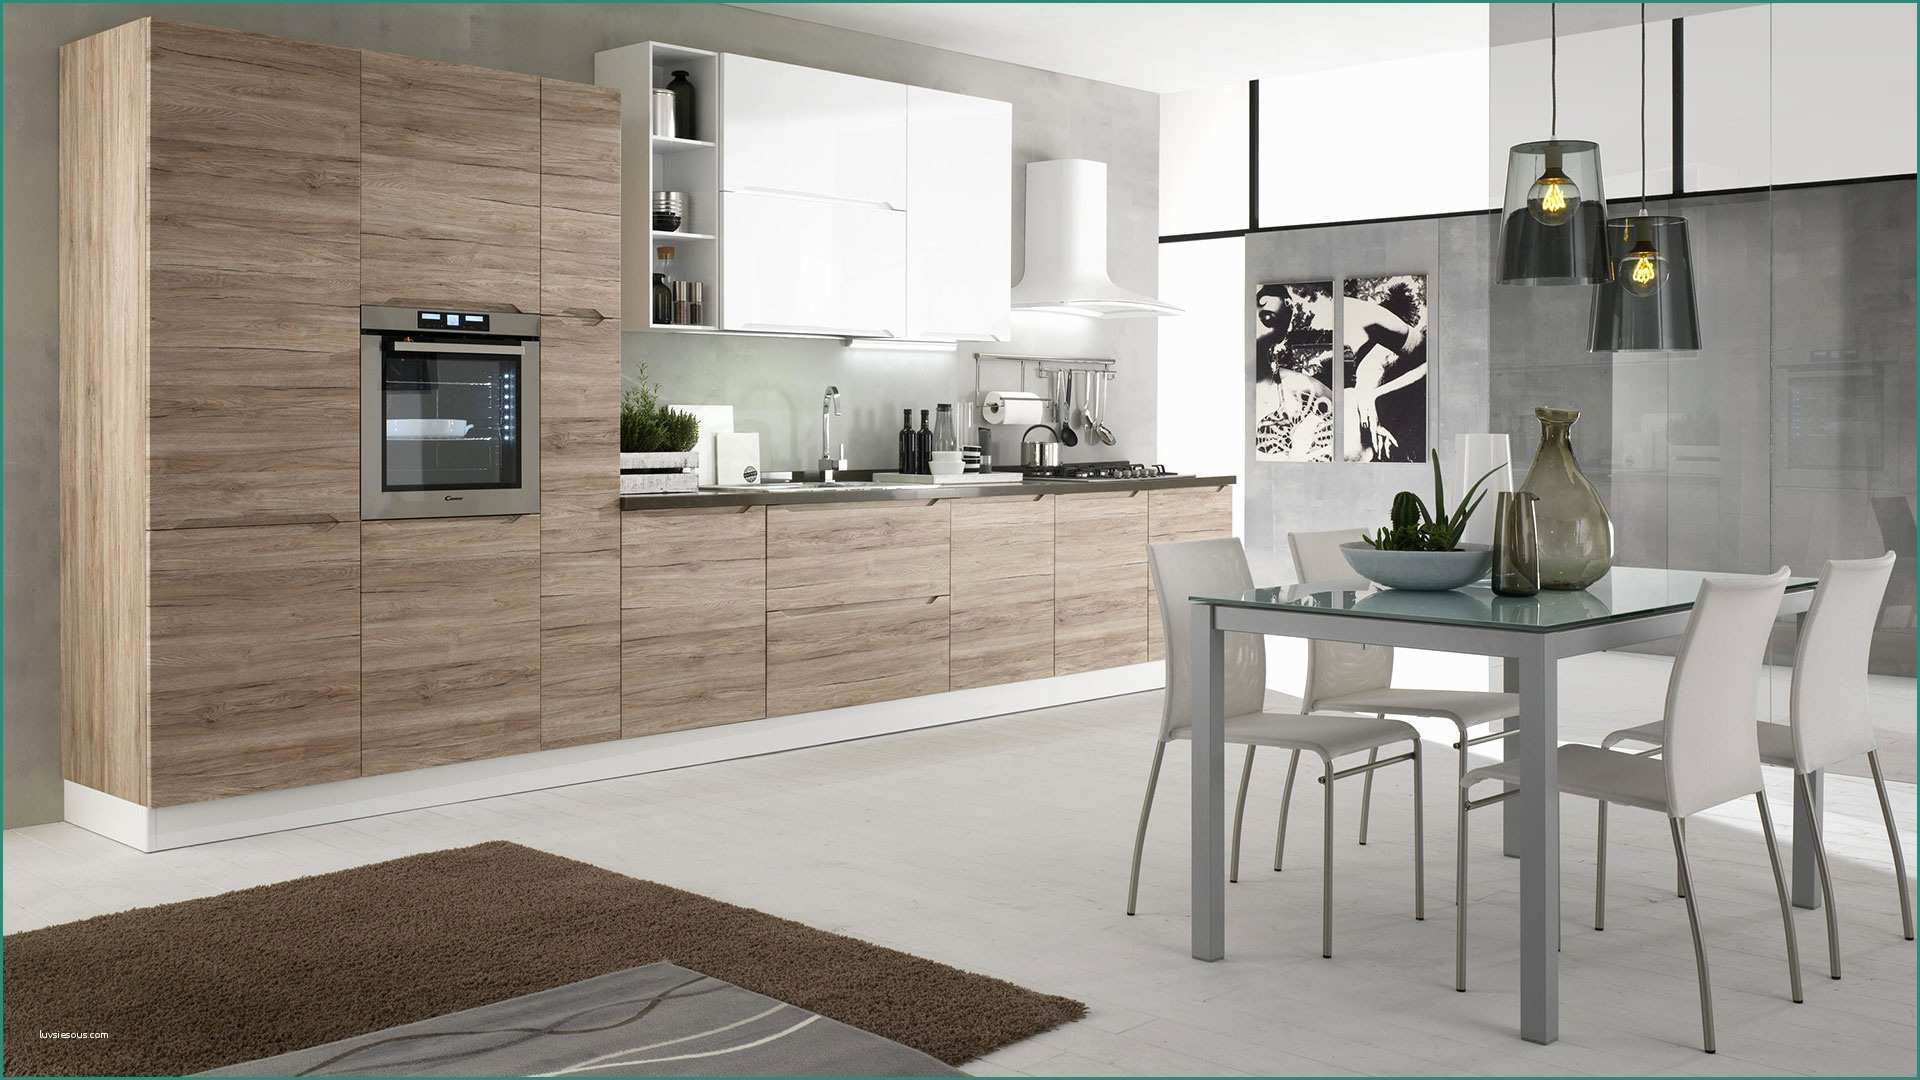 Veneta Cucine Offerte E Immagini Di Cucine Moderne Excellent soggiorno Open Space soggiorno